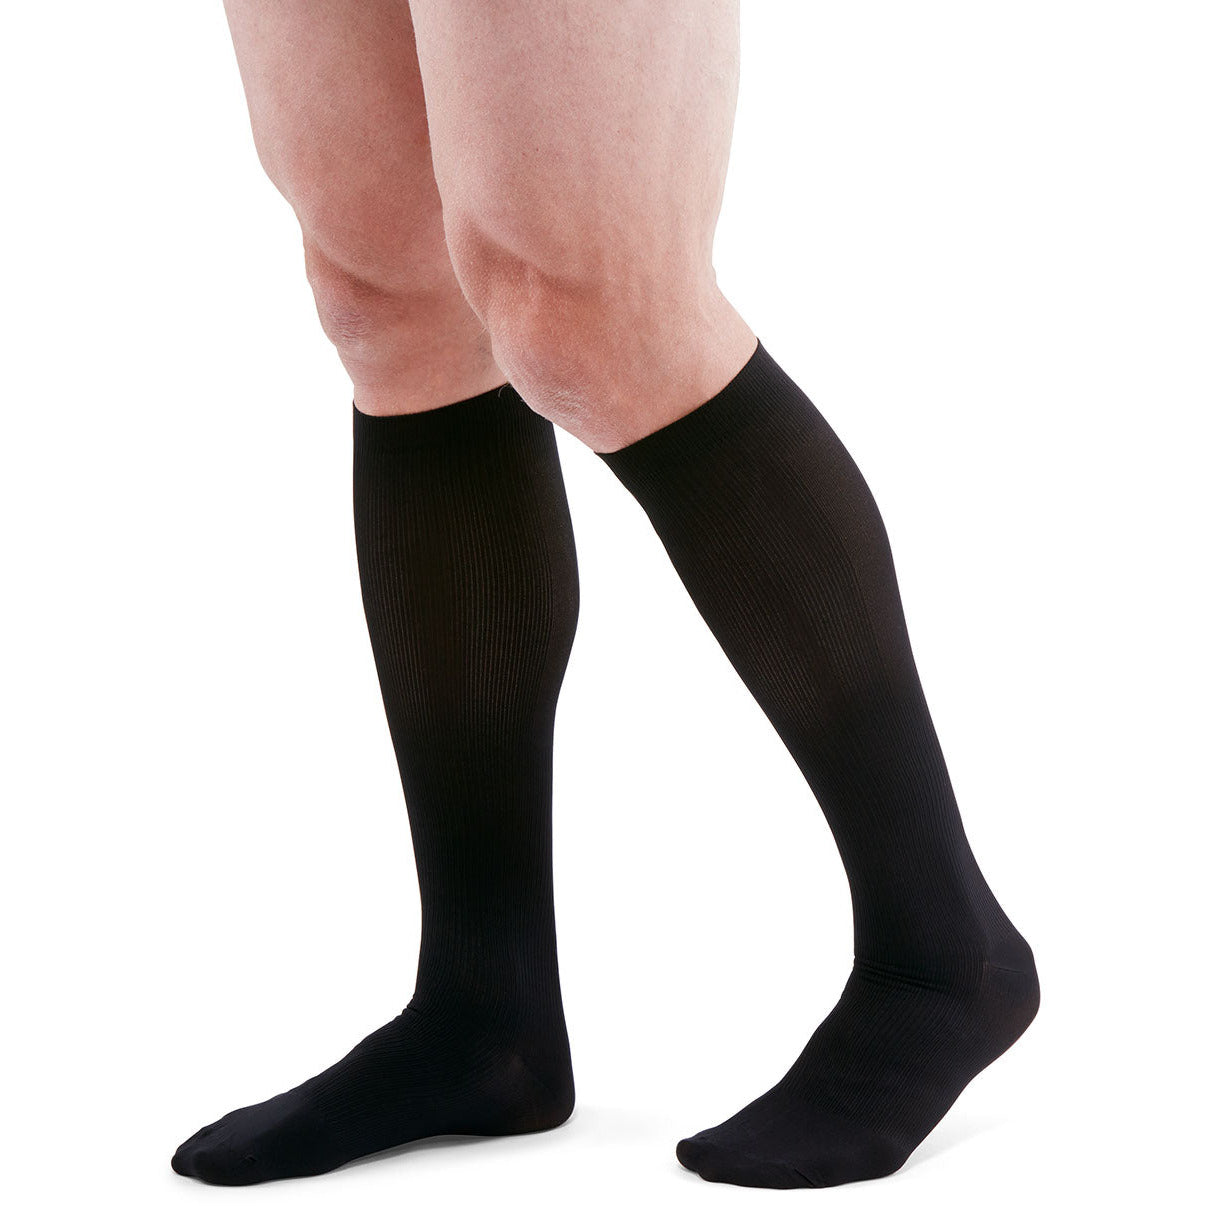 mediven men classic 8-15 mmHg calf closed toe standard